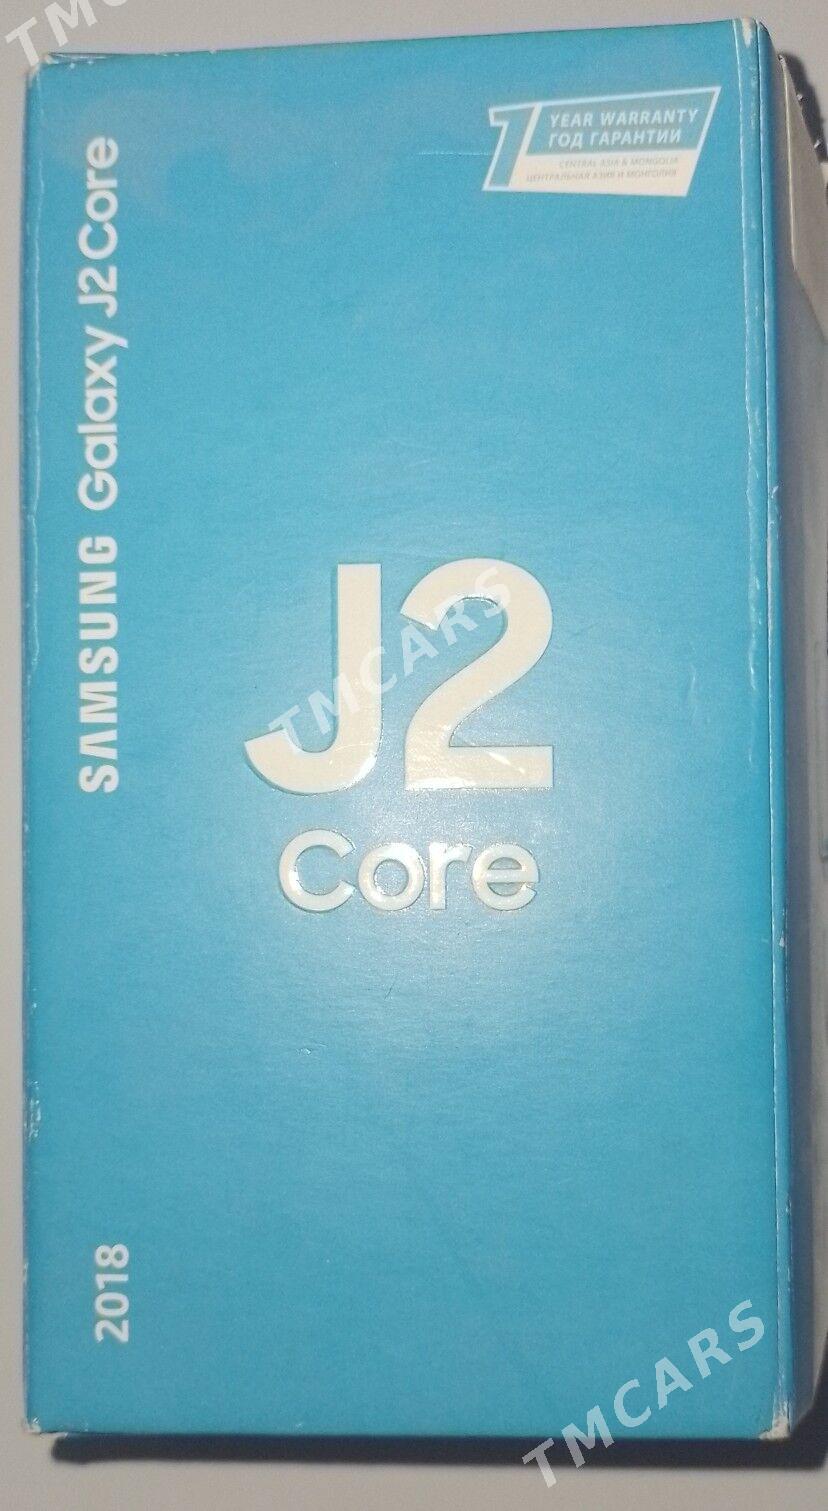 J2 core - Çärjew - img 3